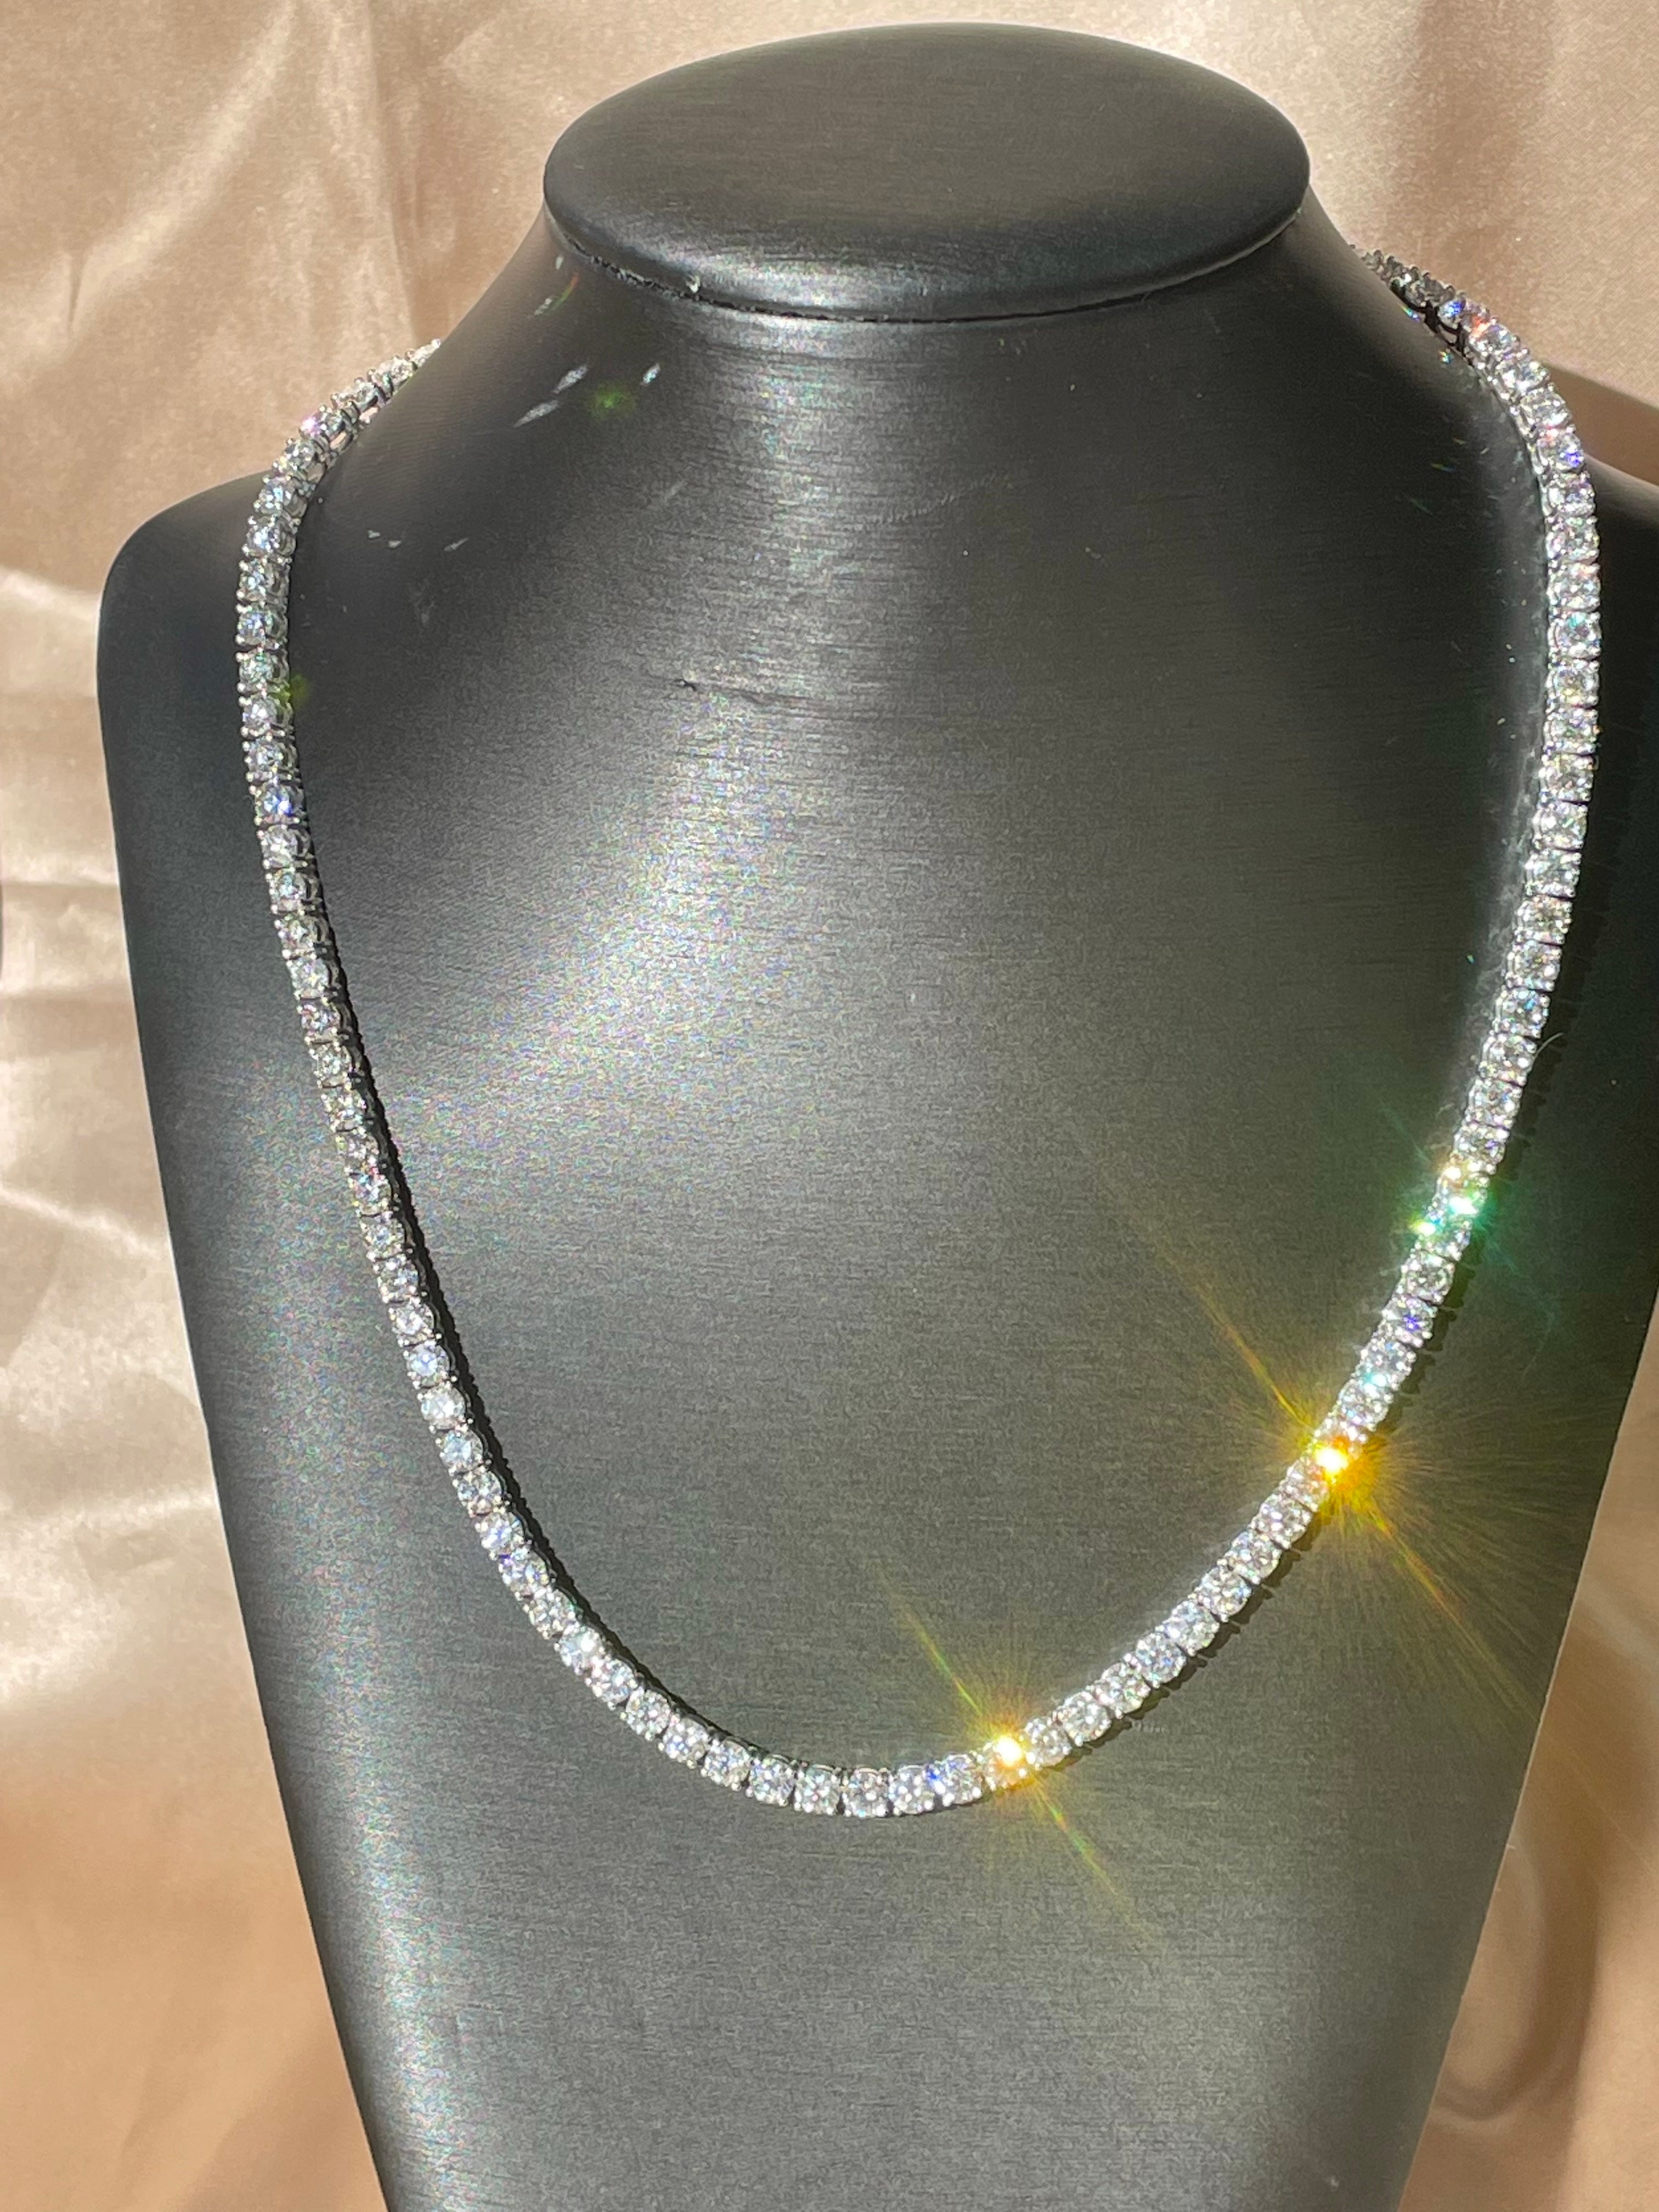 Collier classique et polyvalent qui peut être associé à n'importe quelle tenue. Cet ensemble de diamants naturels ronds est serti à la main et parfaitement aligné pour créer le plus élégant des colliers de diamants. La pièce de résistance pour votre